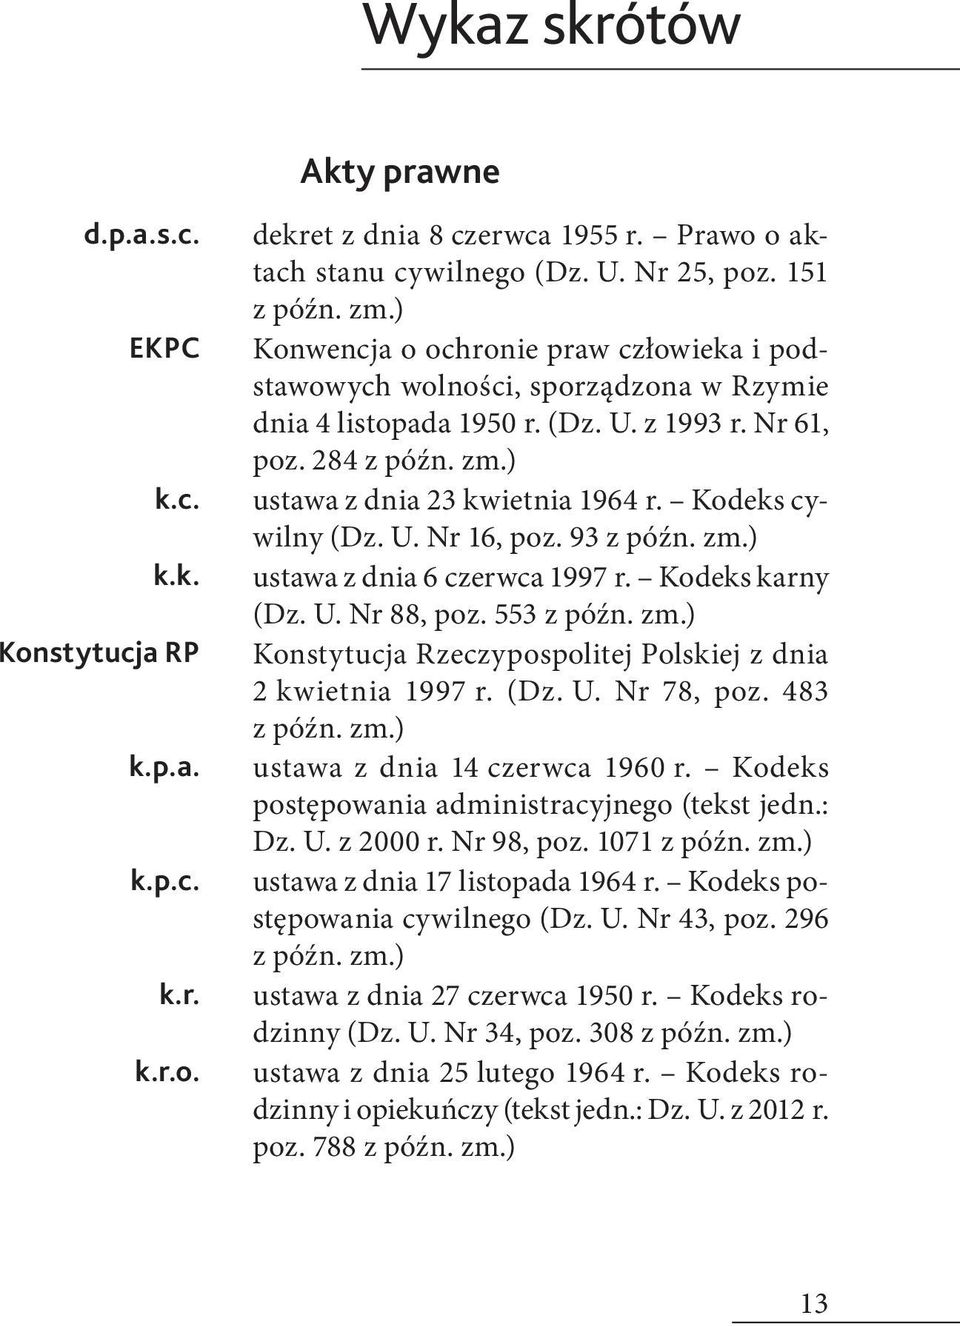 Kodeks cywilny (Dz. U. Nr 16, poz. 93 z późn. zm.) ustawa z dnia 6 czerwca 1997 r. Kodeks karny (Dz. U. Nr 88, poz. 553 z późn. zm.) Konstytucja Rzeczypospolitej Polskiej z dnia 2 kwietnia 1997 r.